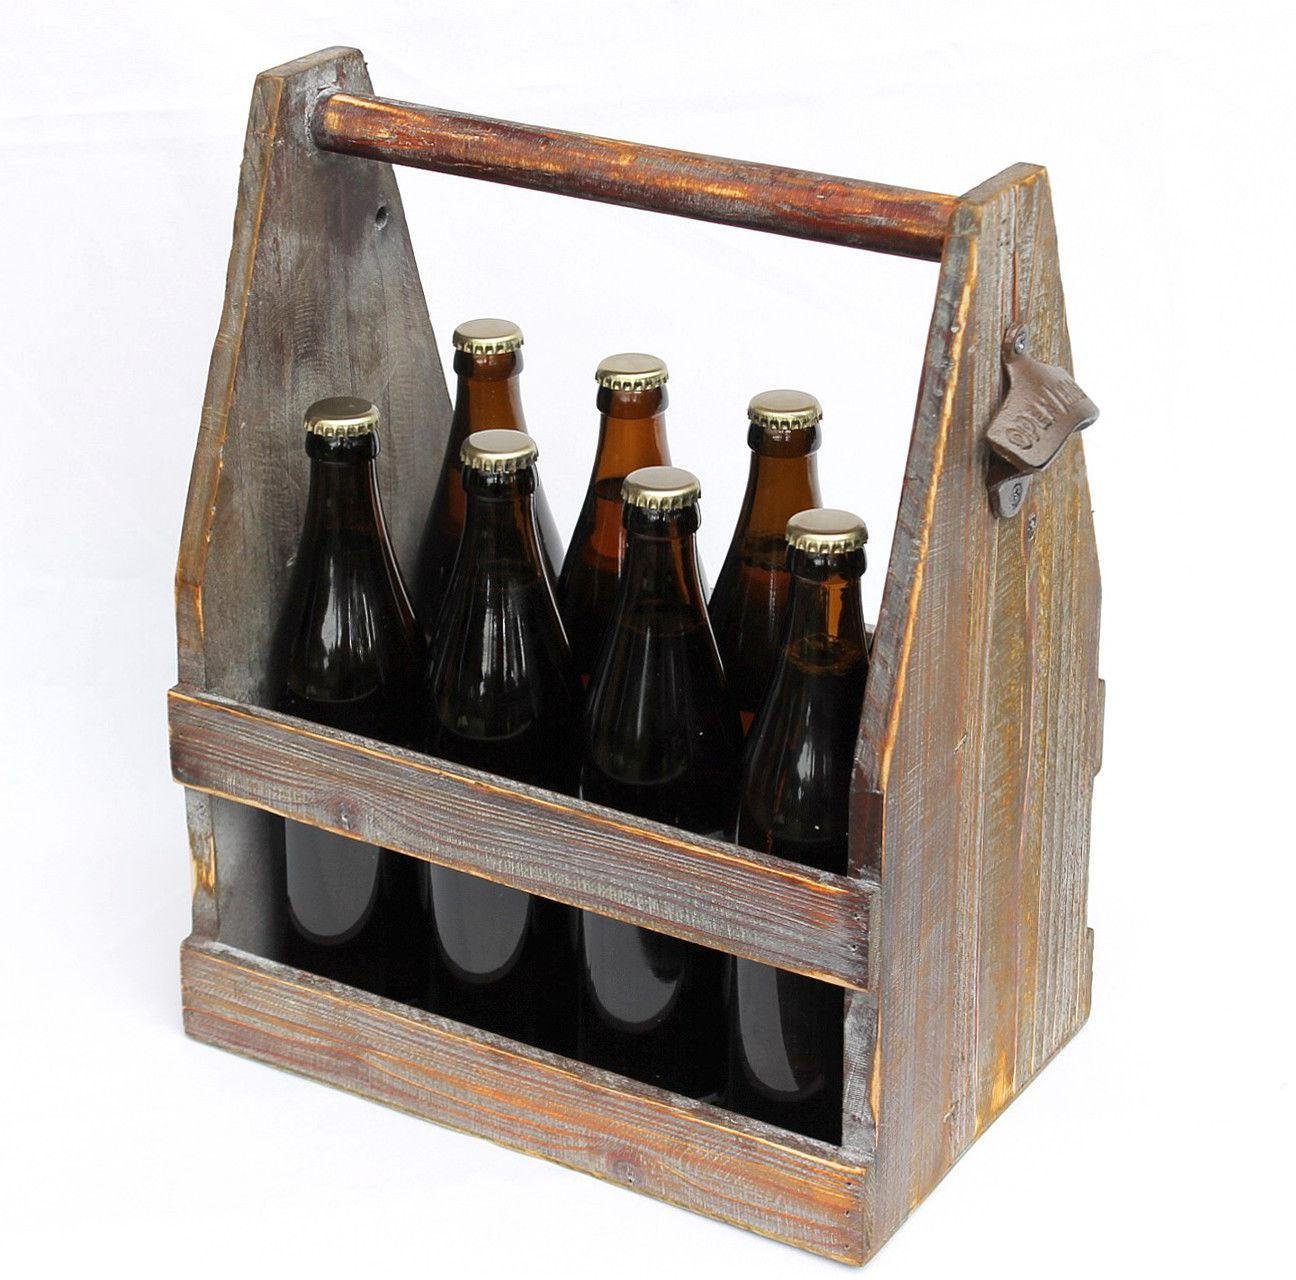 DanDiBo Flaschenkorb Bierträger aus Flaschenträger Bierkiste Flaschenöffner 5087 38 cm Holz mit